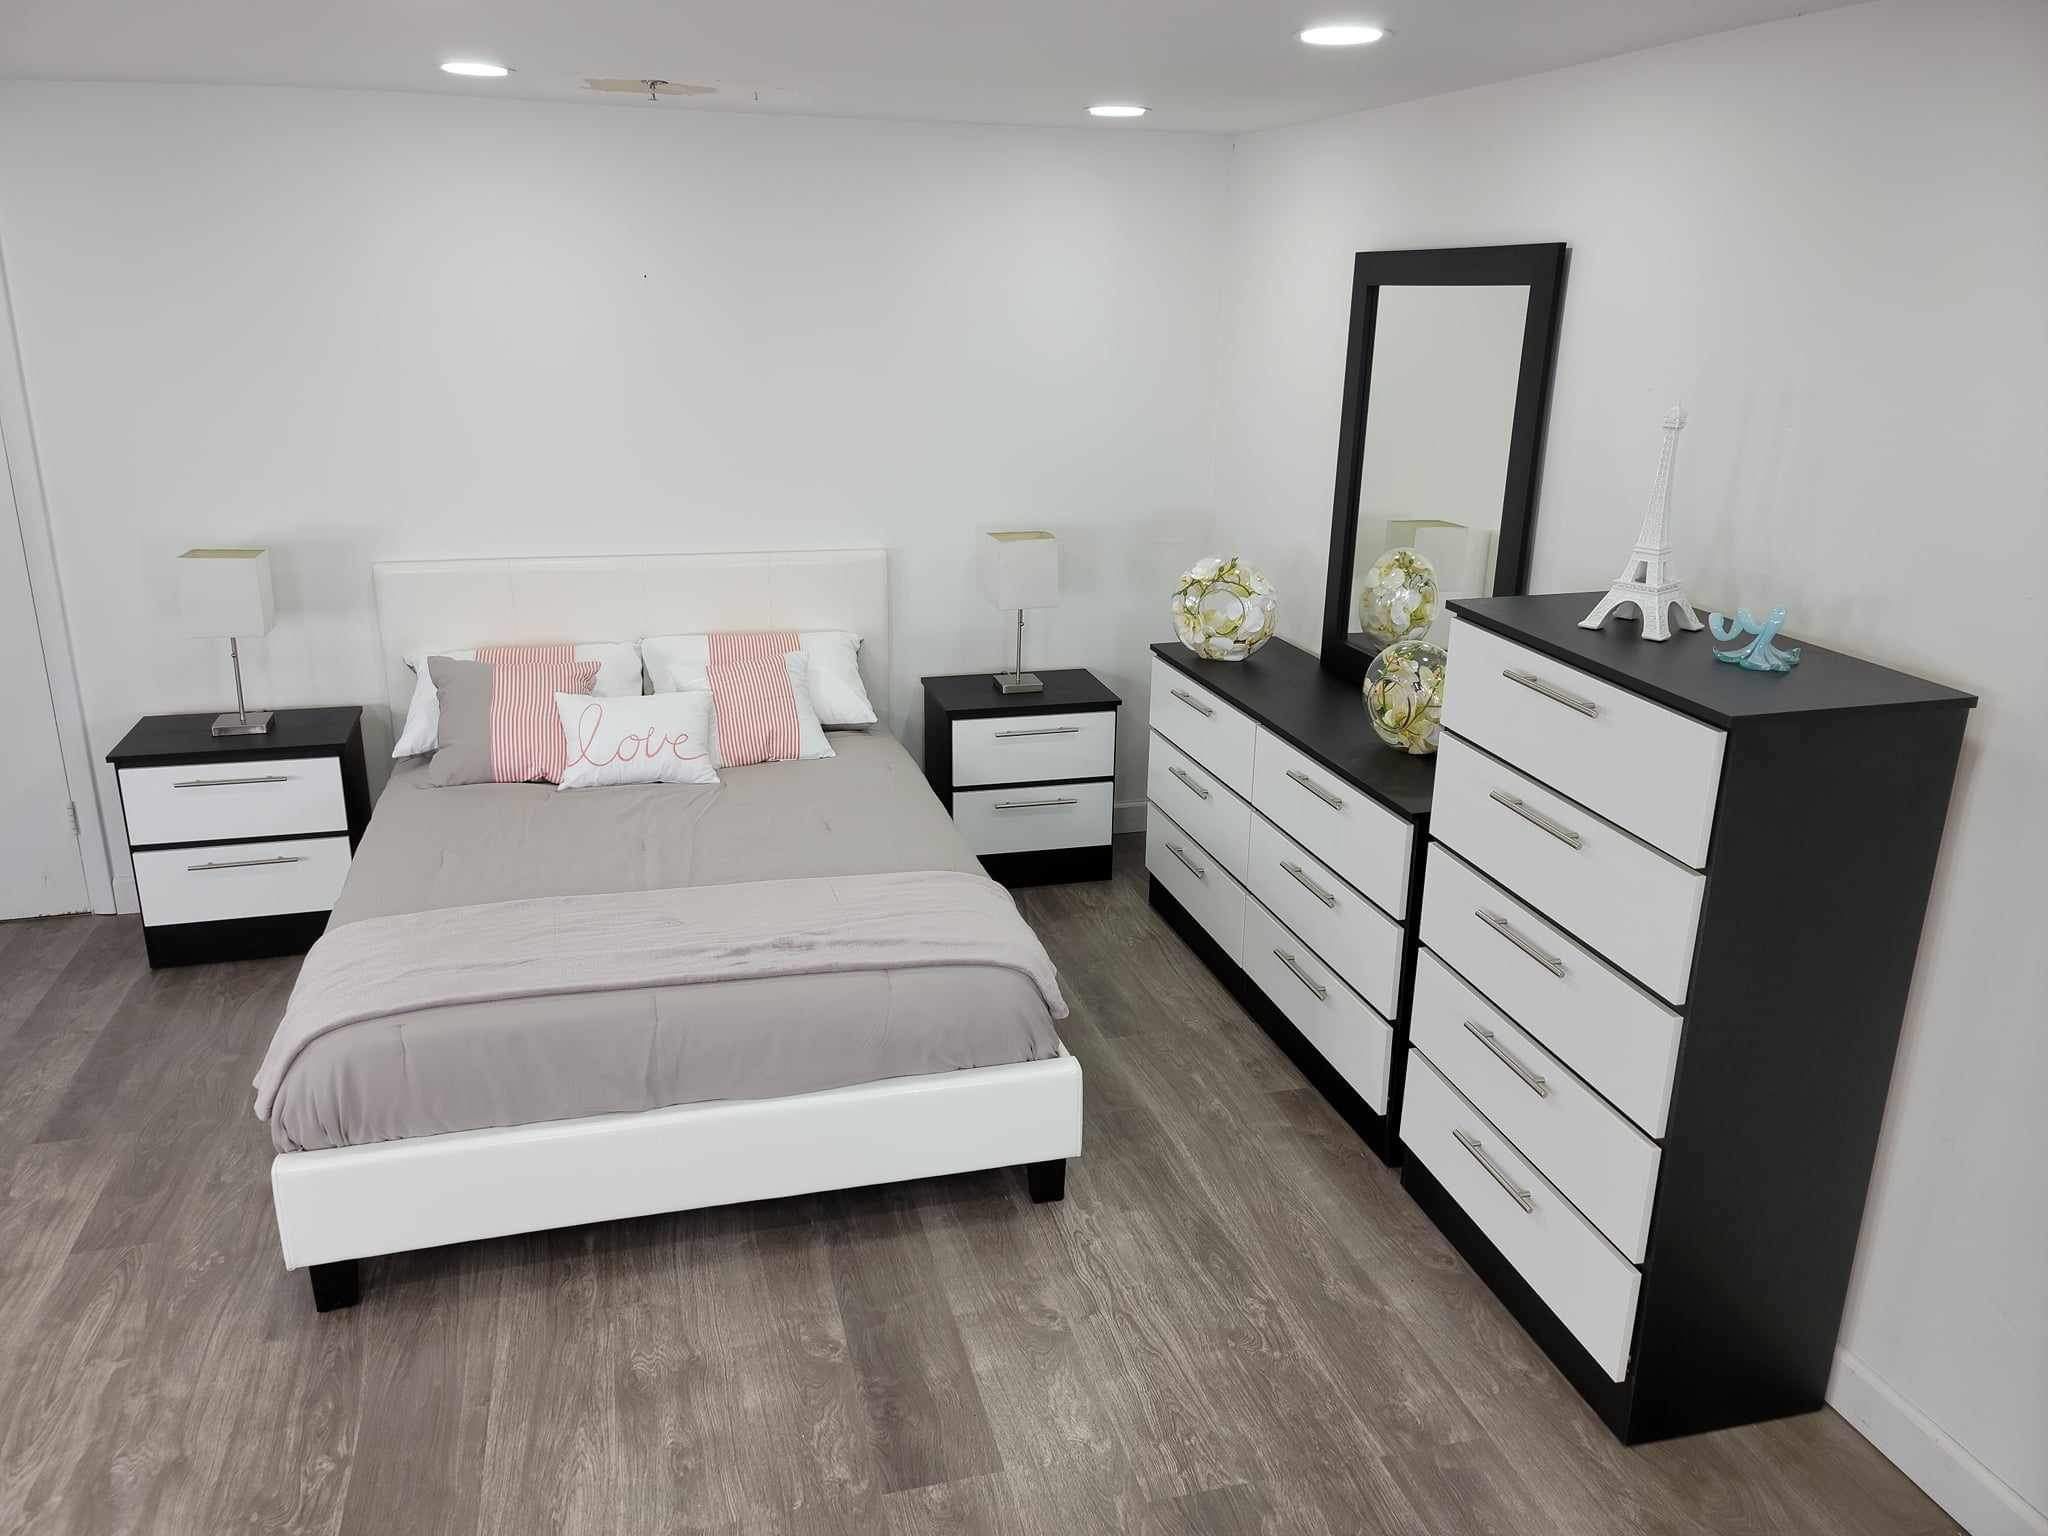 Brand New Bedroom Set / Juego de Cuarto Nuevo … Delivery 🚚 